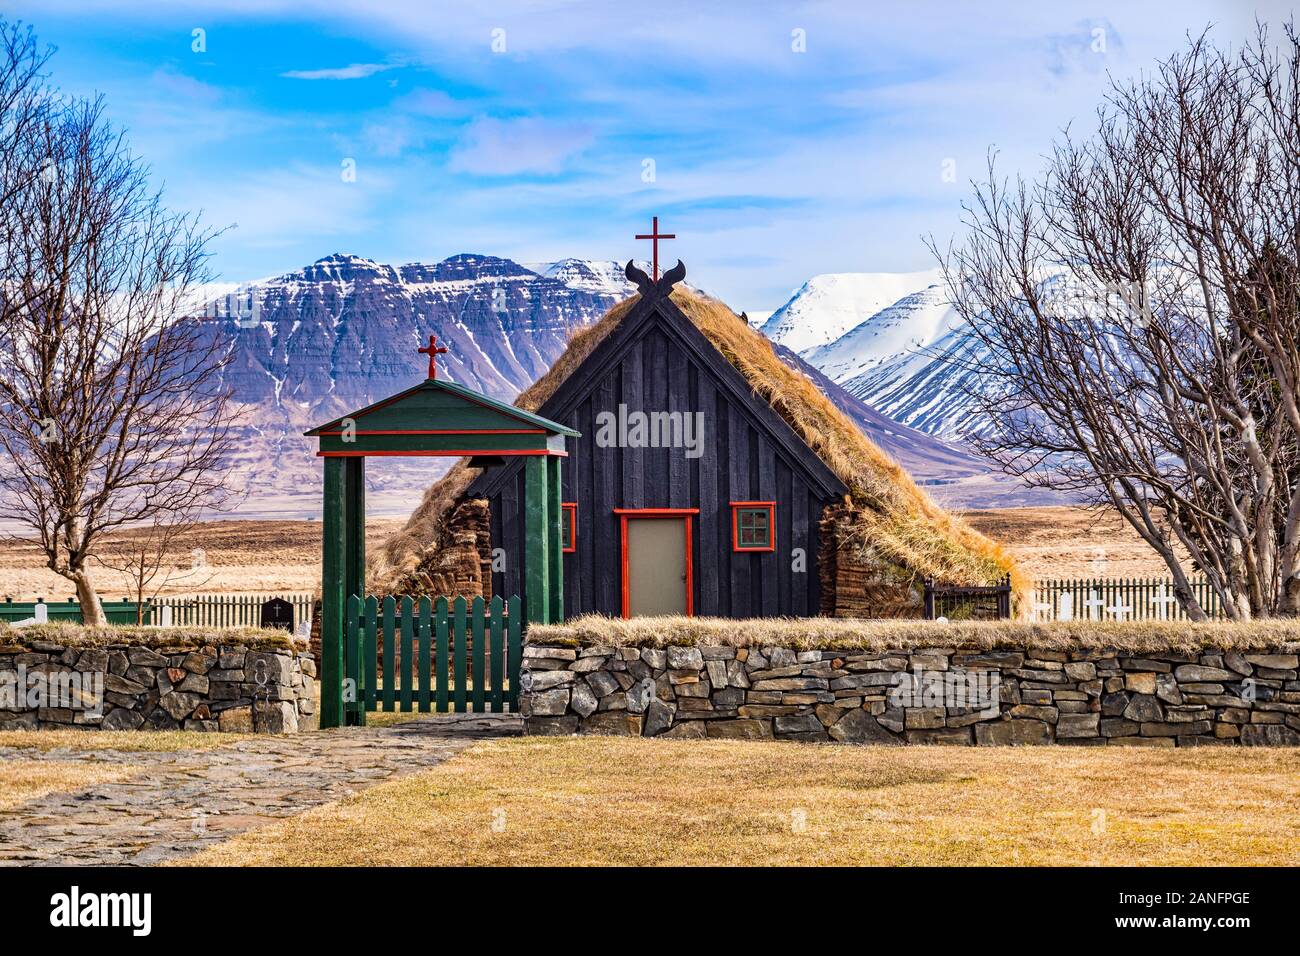 Viðimýrarkirkja ou Vidimyri, église, une église du 19ème siècle couverte de gazon dans le district de Skagafjörður Islande du Nord. Banque D'Images